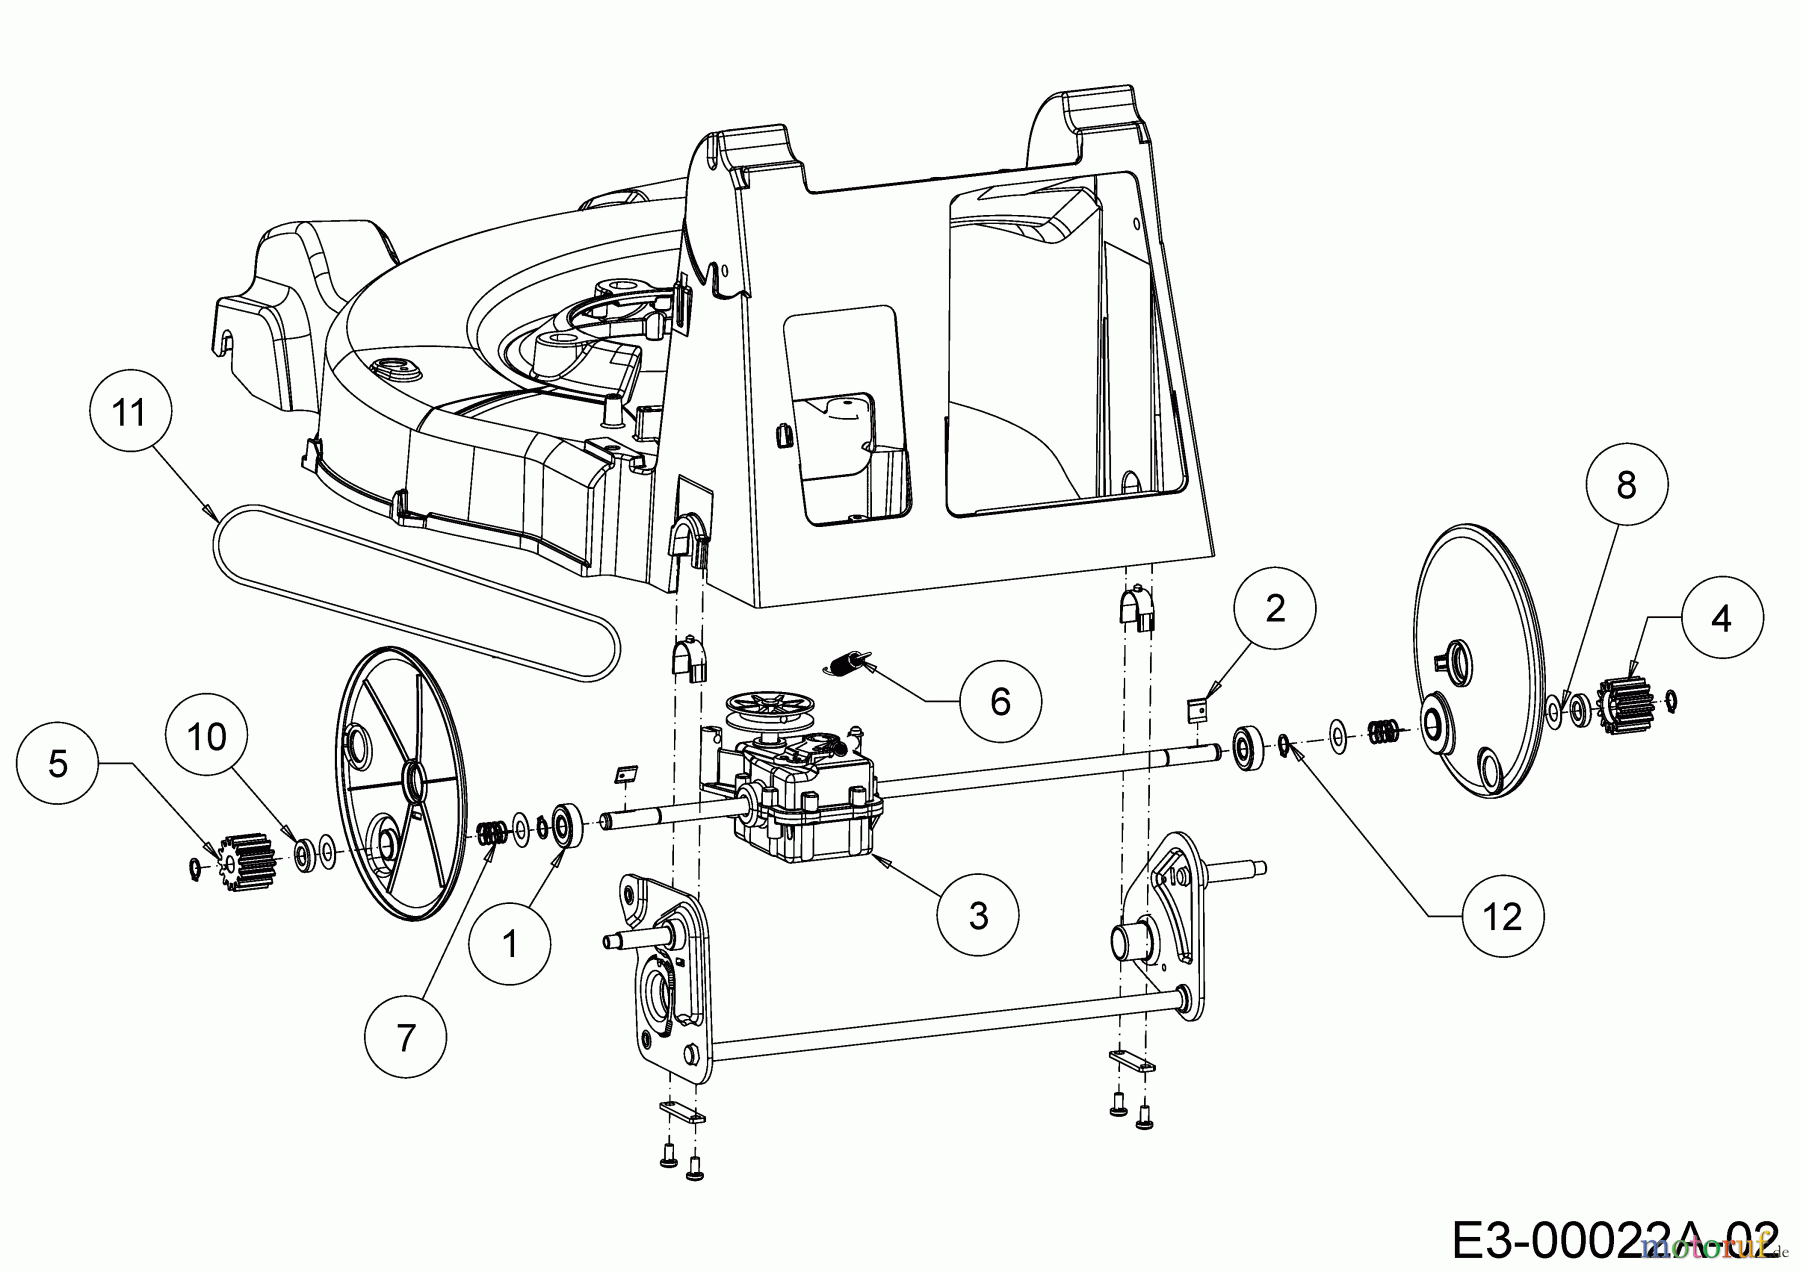  WOLF-Garten Expert Petrol mower self propelled Expert 53 B S 12A-ZA7F650  (2018) Gearbox, Belt